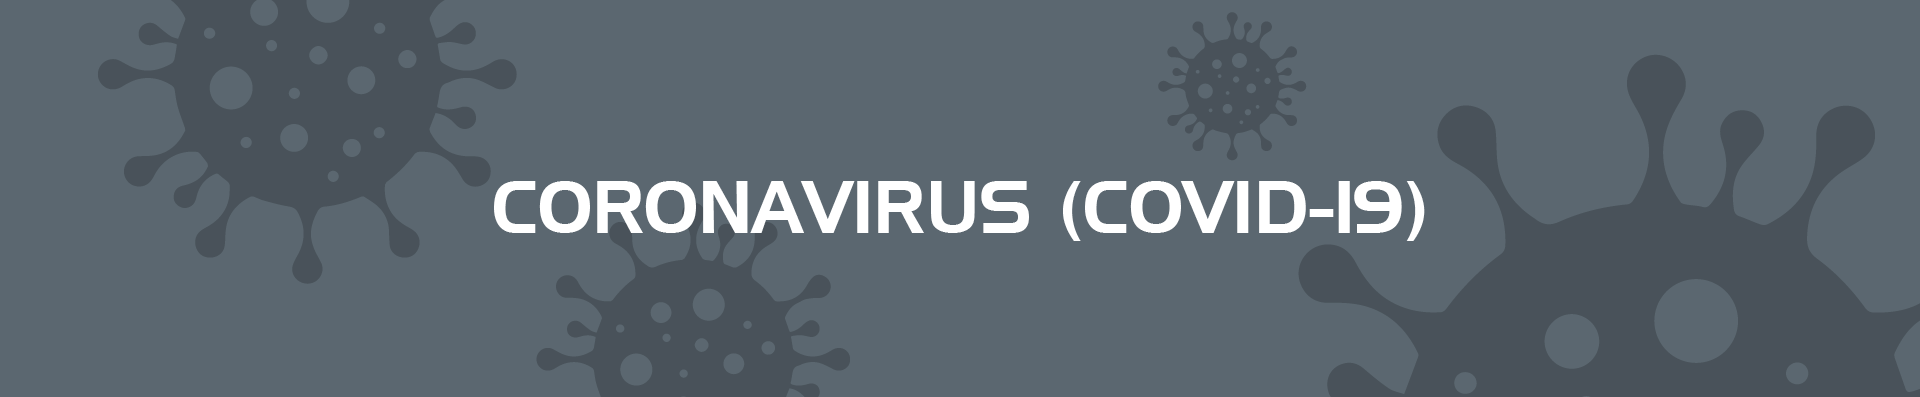 CoronavirusHeader